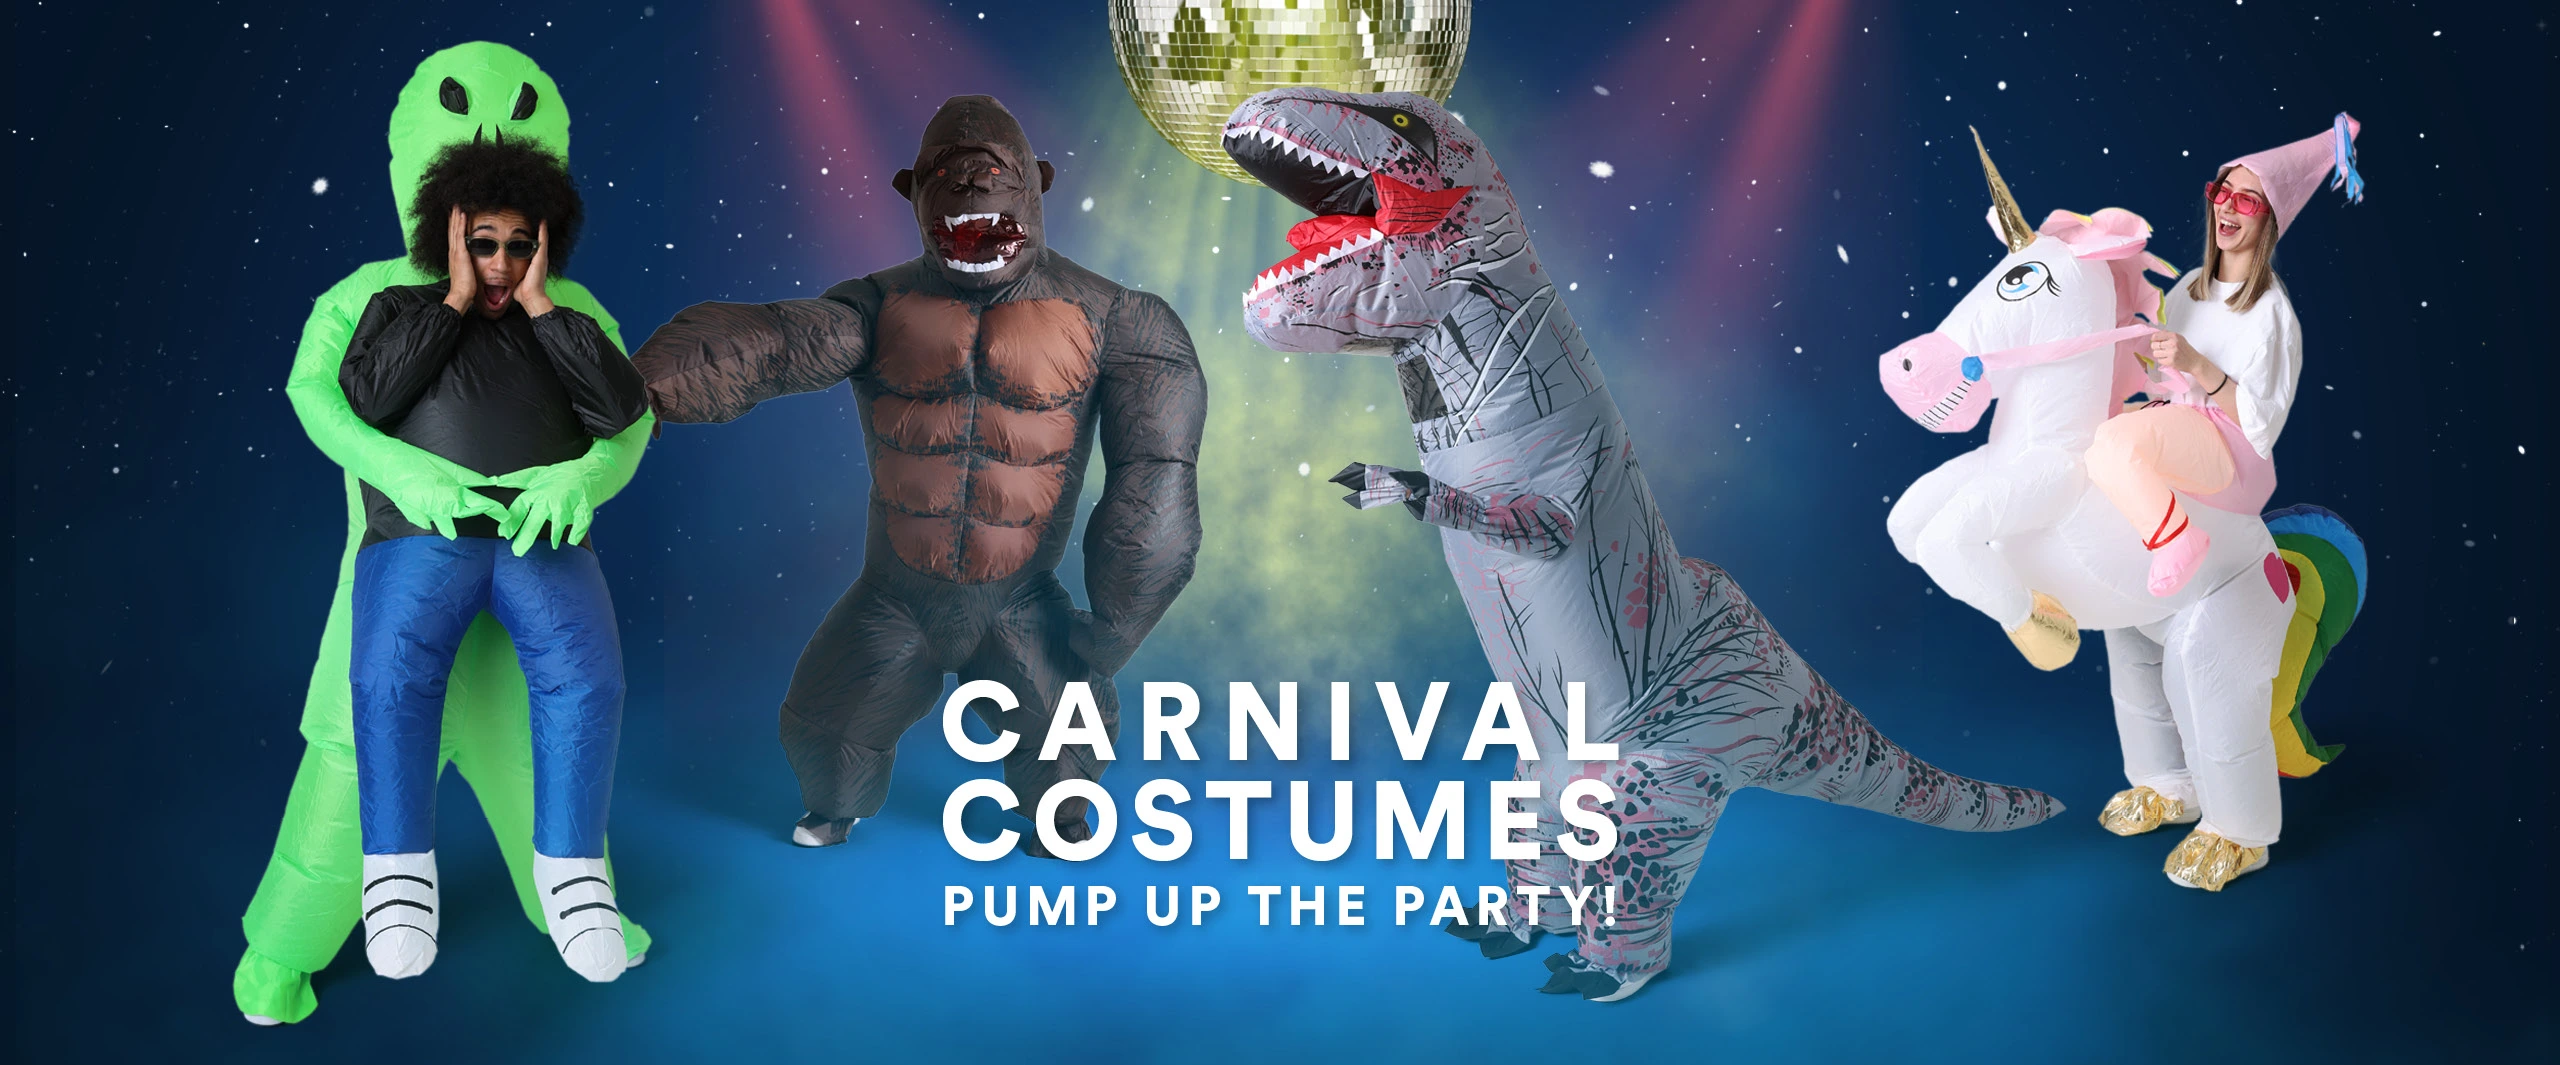 Acheter costumes de carnaval Suisse